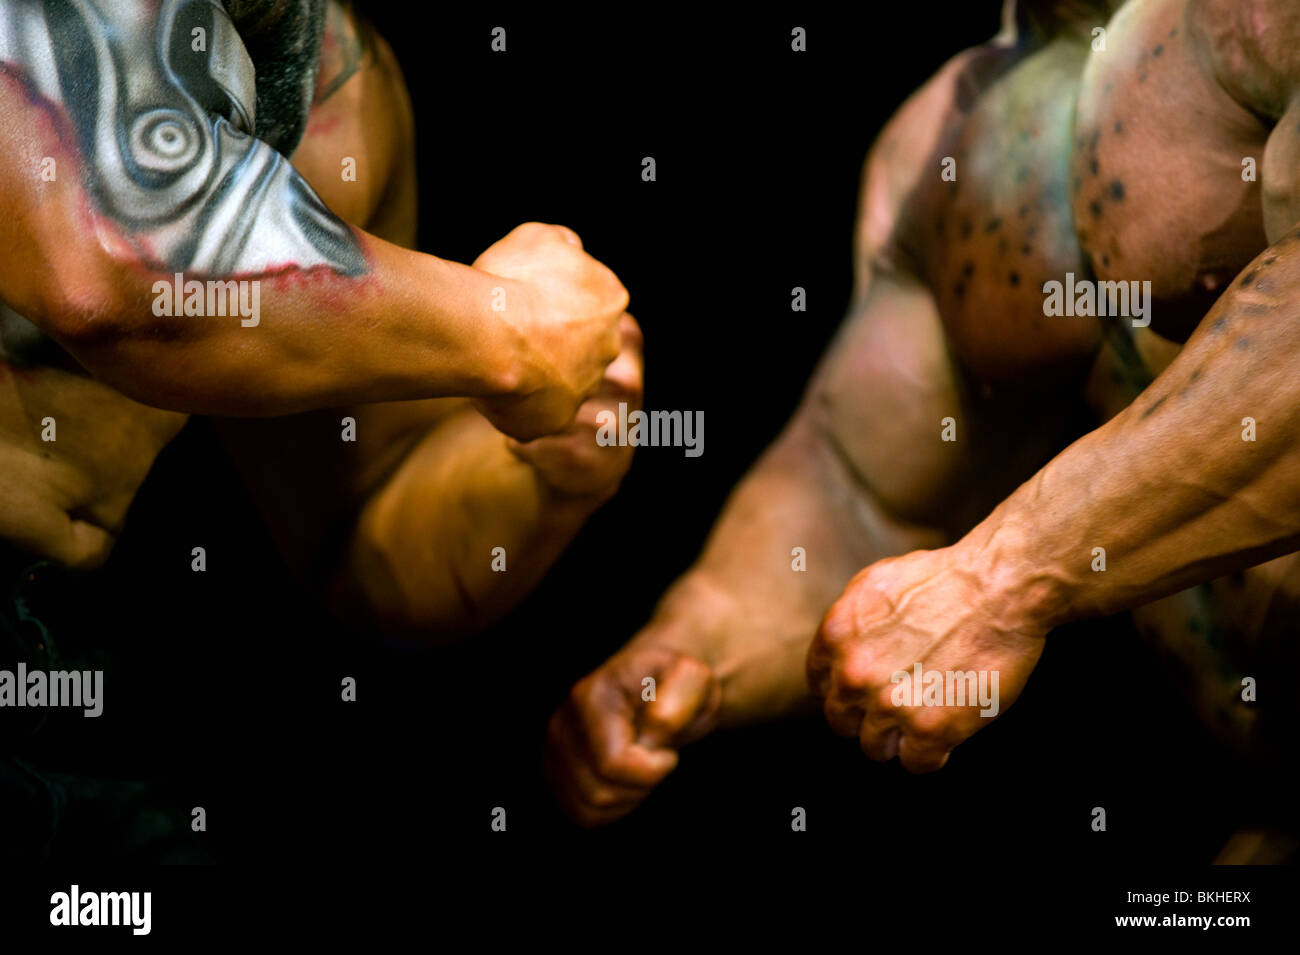 Détail de deux hommes bodybuilders avec bodypainting durant la foire de fitness FIBO Power à Essen, Allemagne. Banque D'Images